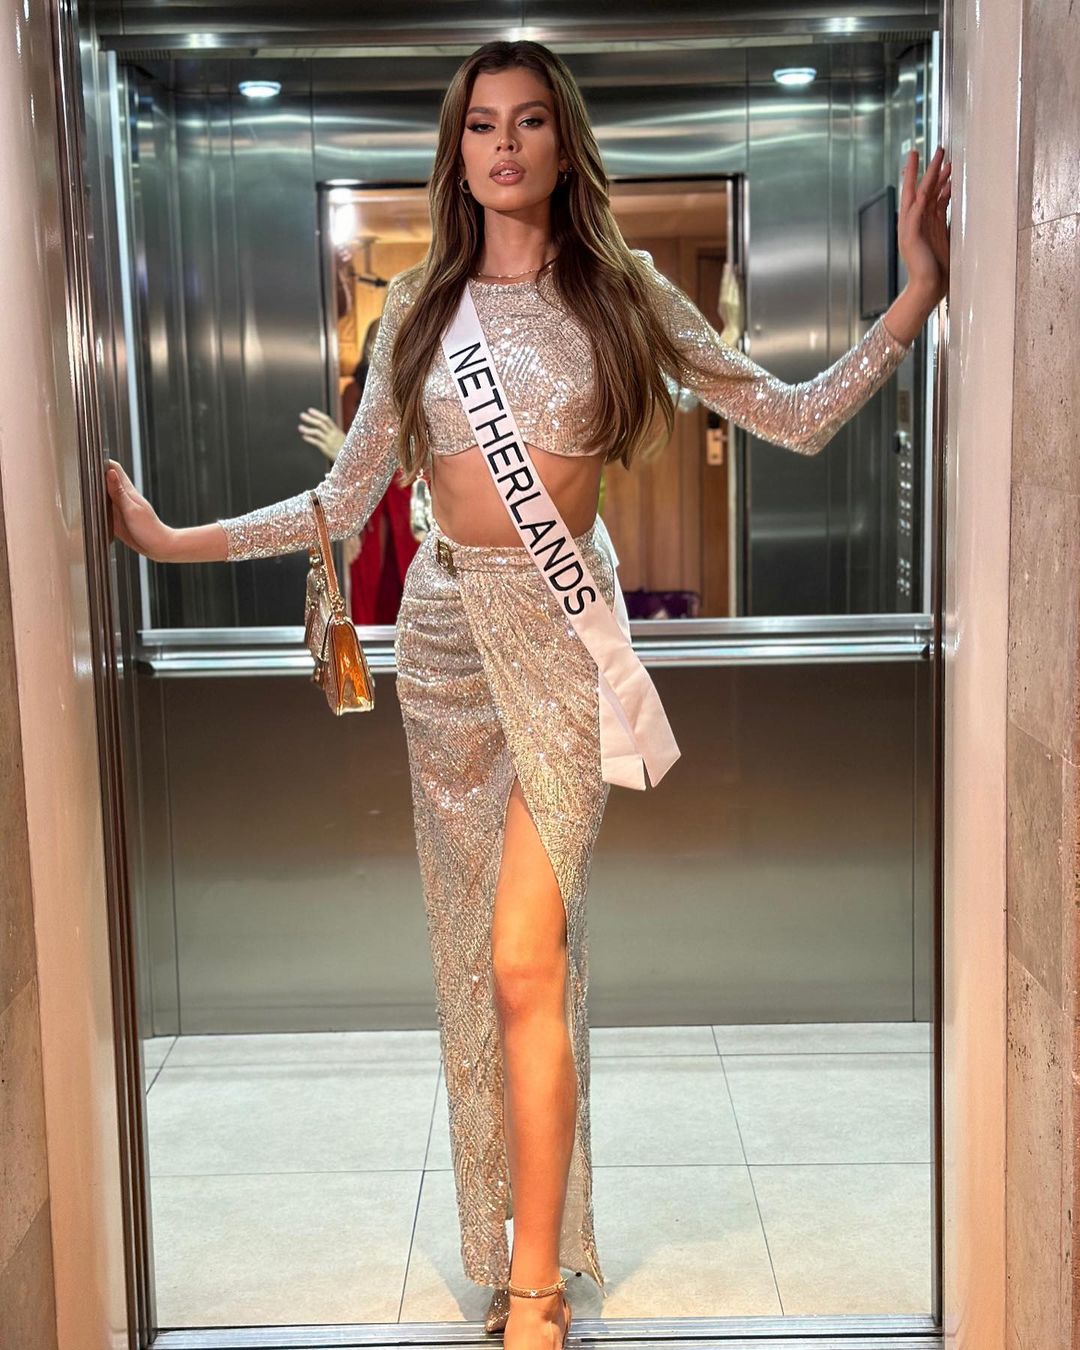 Мисс Вселенная: впервые в конкурсе принимает участие модель plus-size  — фото